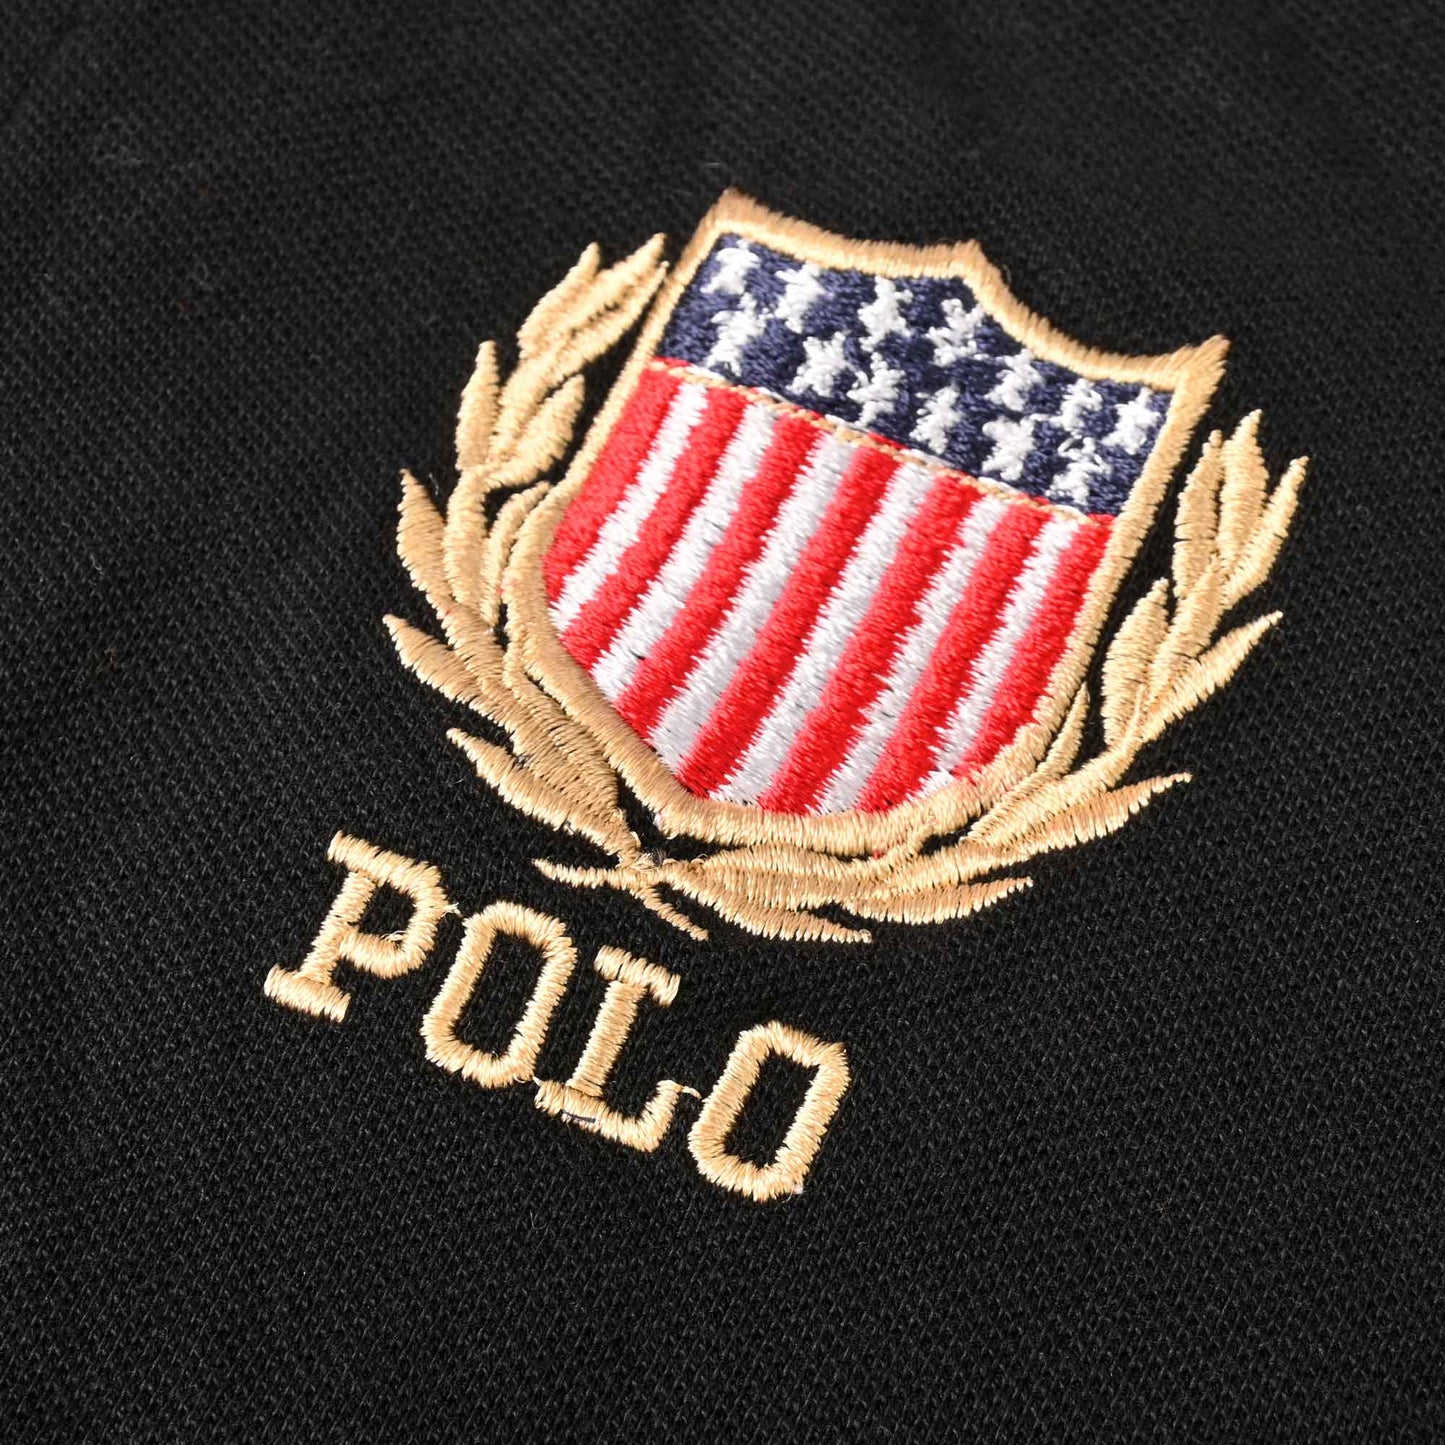 Polo Republica Men's USA Crest & 8 Embroidered Short Sleeve Polo Shirt Men's Polo Shirt Polo Republica 